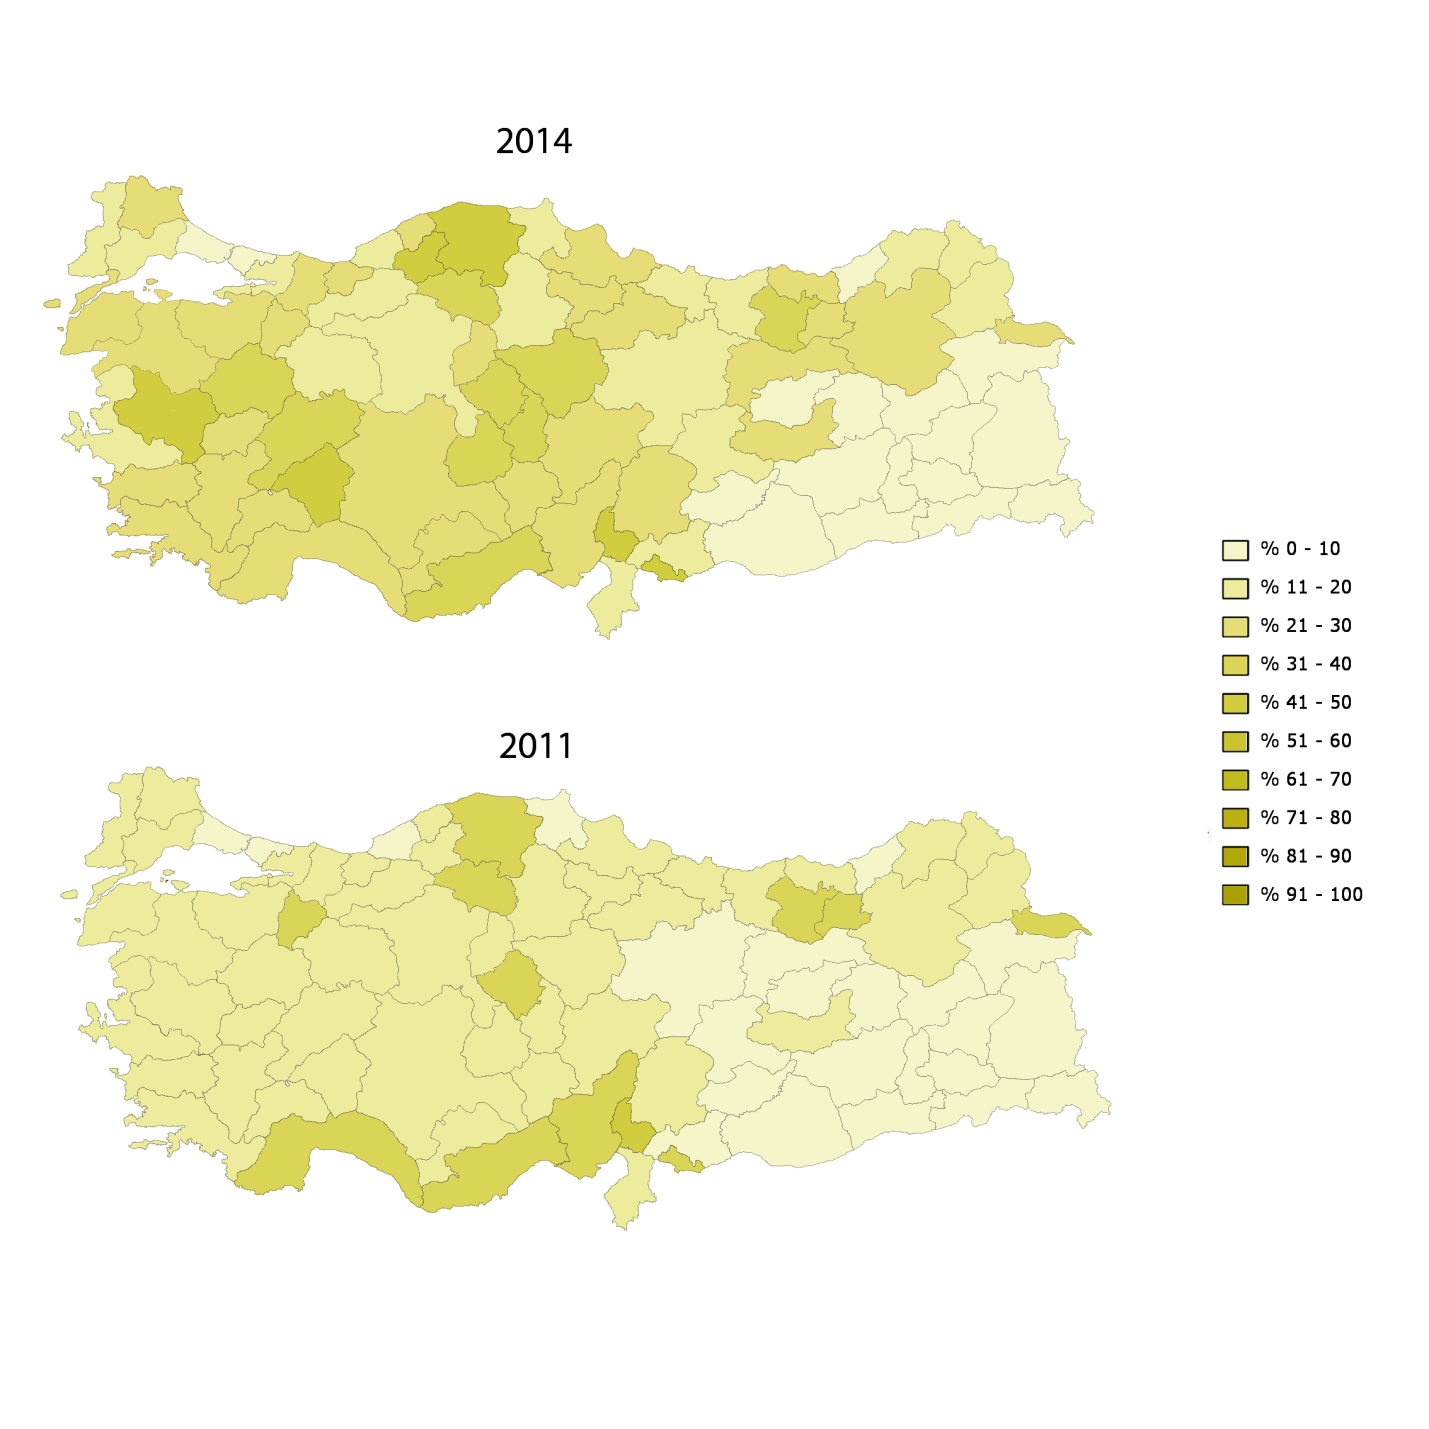 MHP oy dağılımı gösteren haritayı incelediğimizde ise: MHP nin bulunduğu bölgelerde oyunu yaygın olarak arttırdığı görülüyor. MHP nin Orta Anadolu da yaygın olduğu görülüyor.